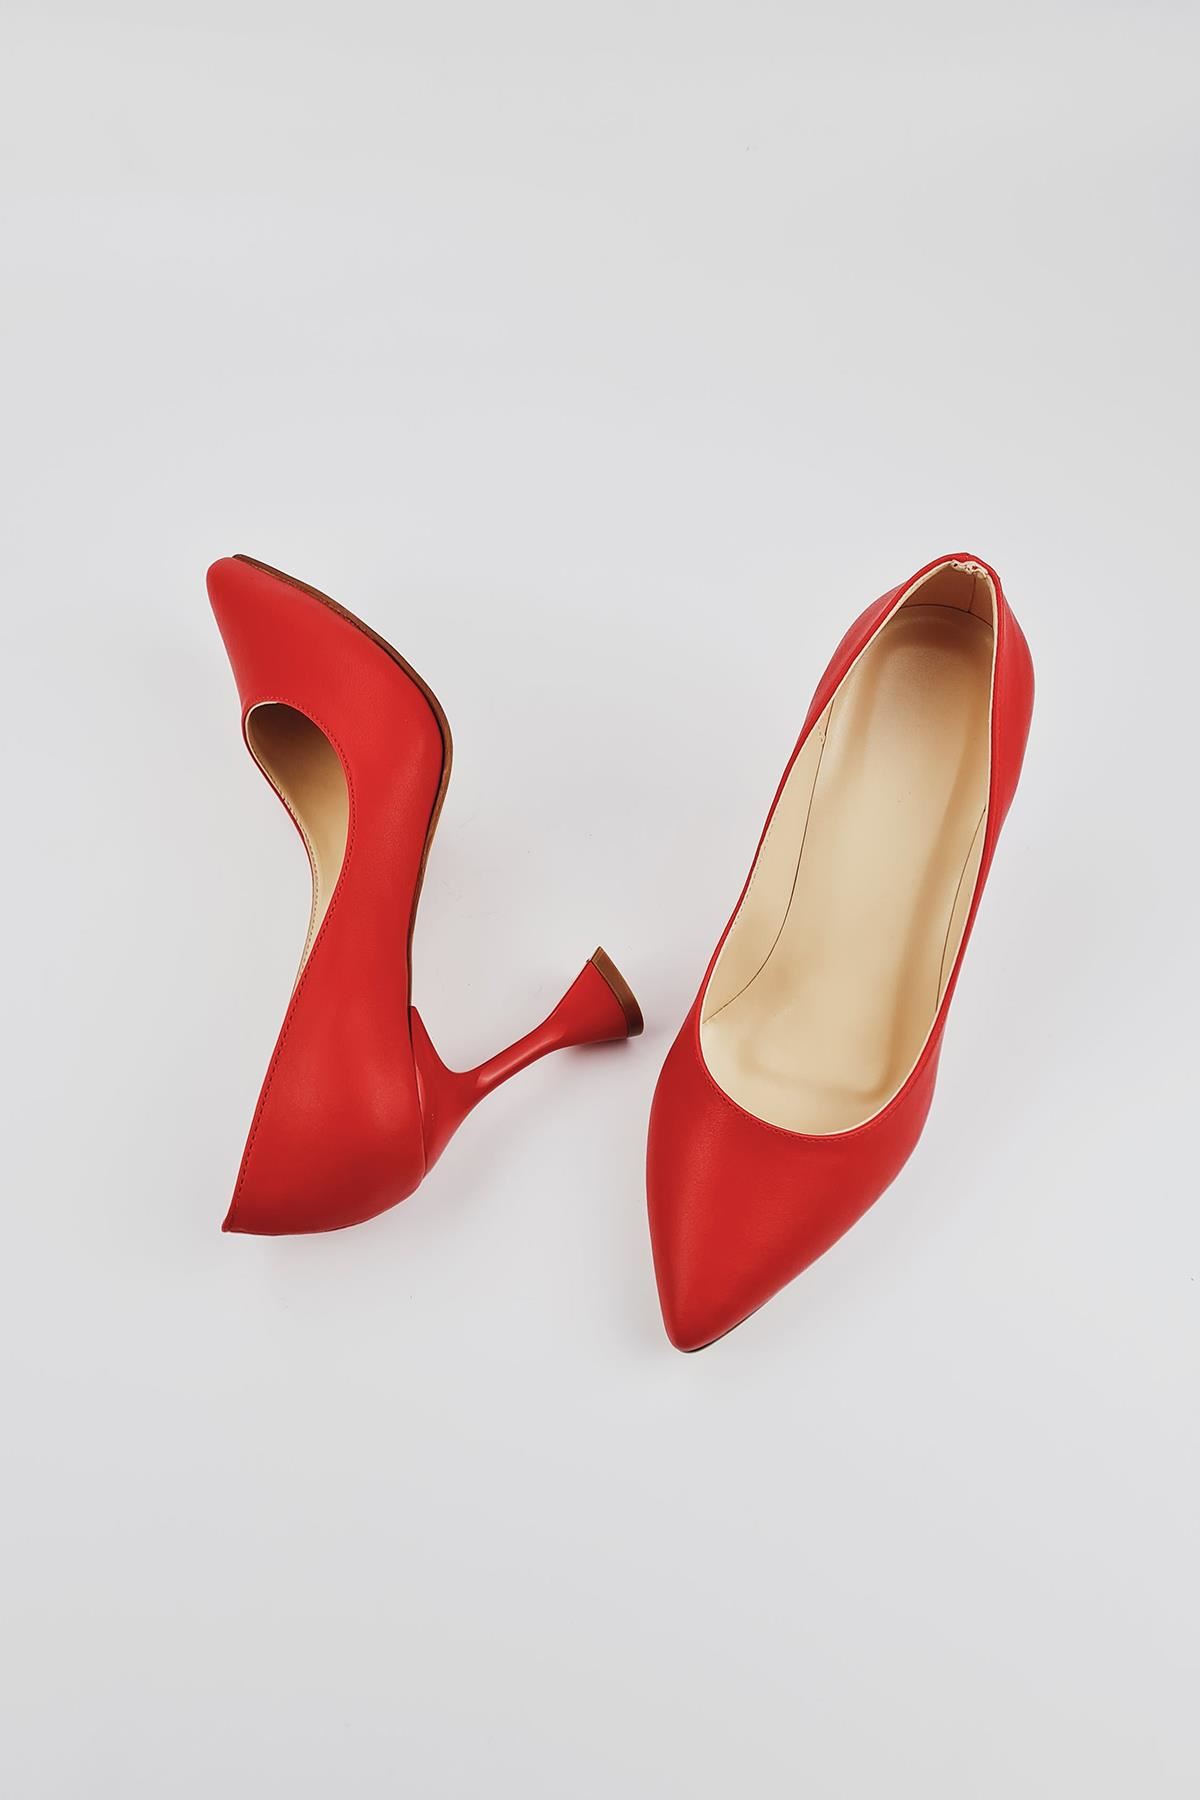 Beliz Kadın Stiletto Topuklu Ayakkabı Kırmızı Cilt